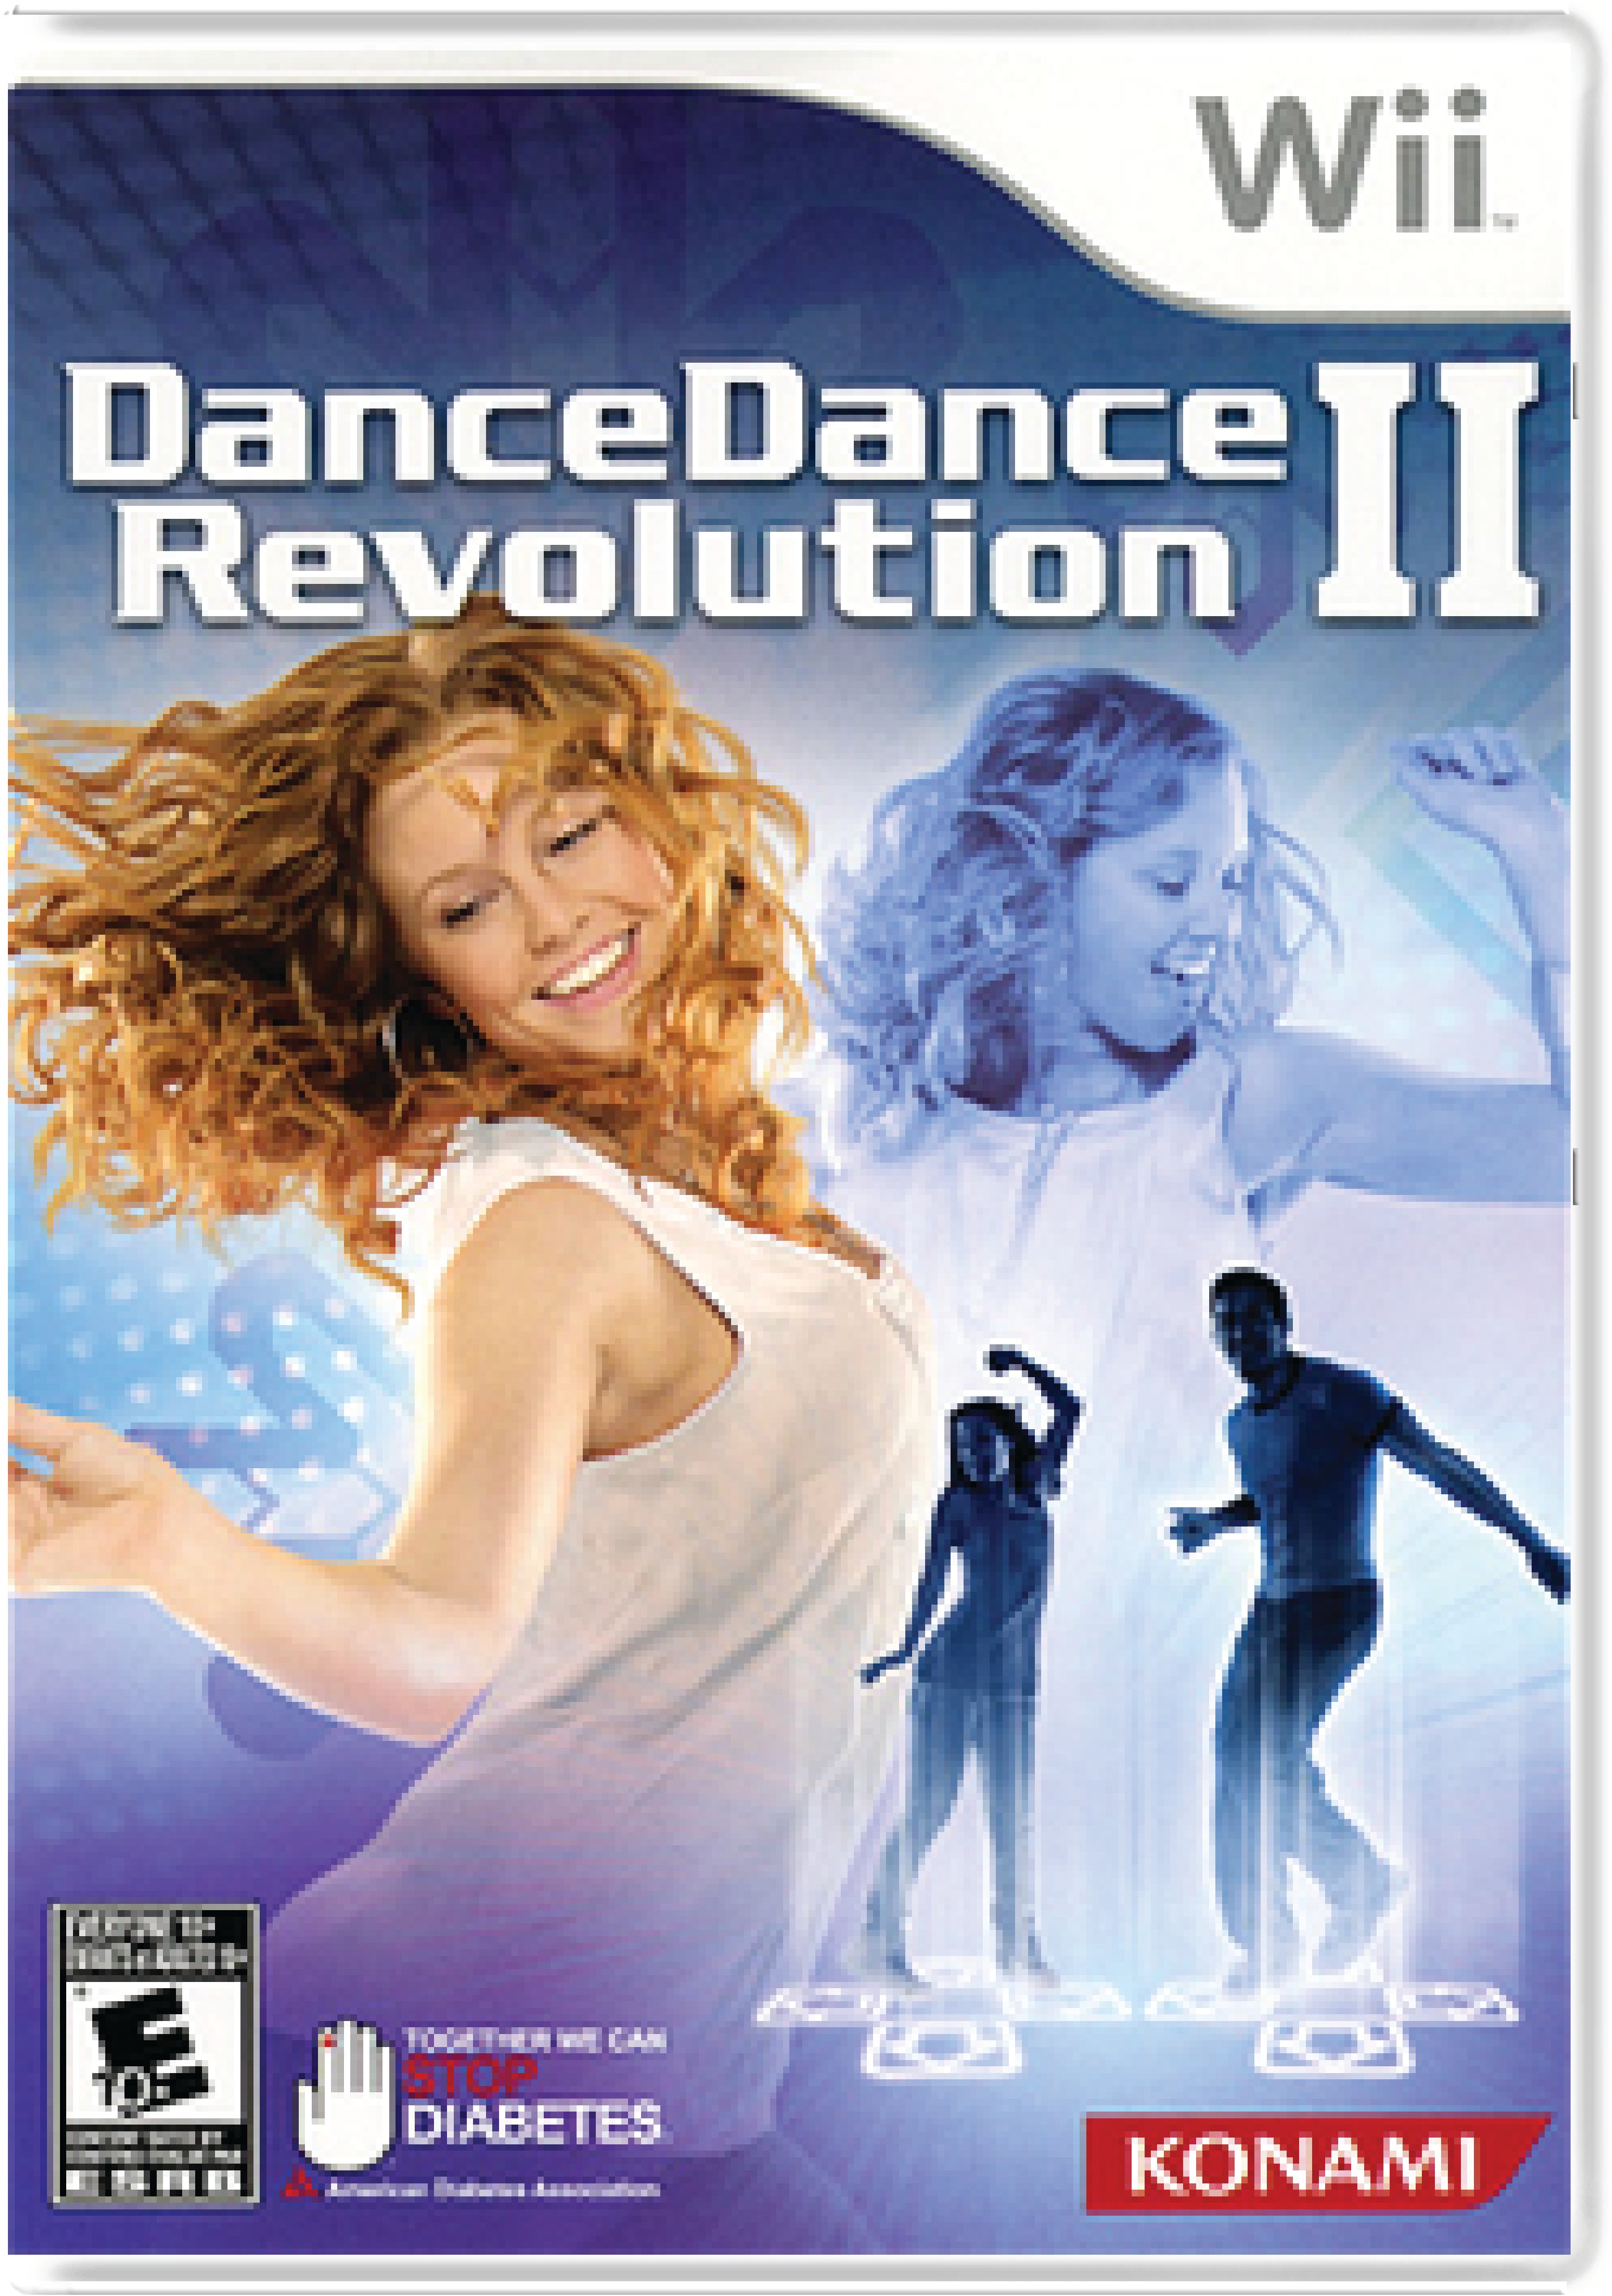 Dance Dance Revolution II Cover Art